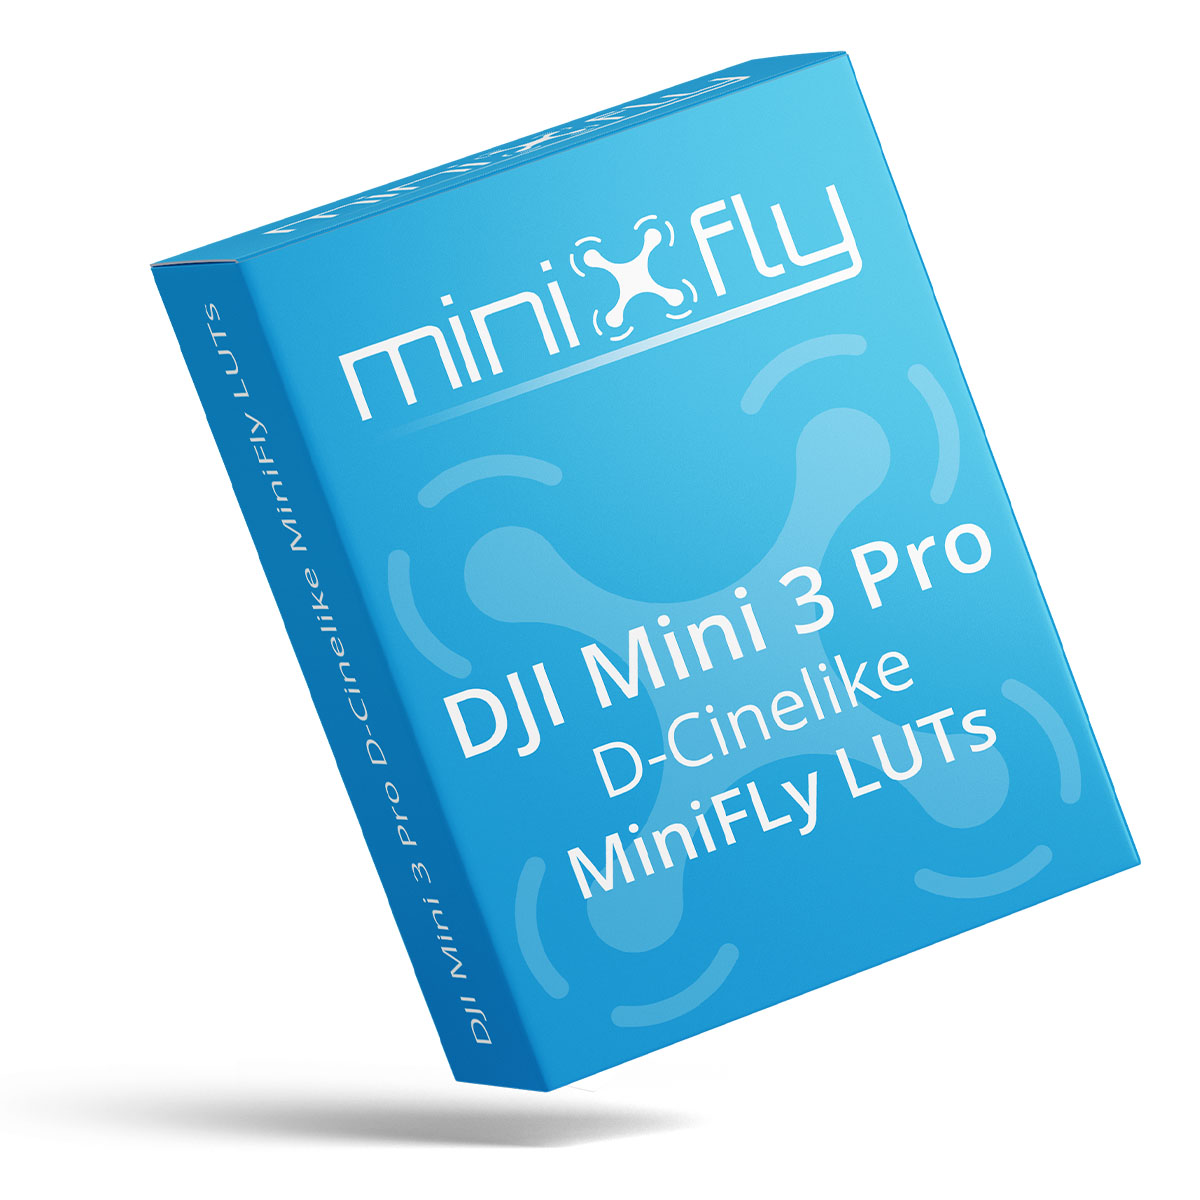 MiniFly LUTs dla DJI Mini 3 Pro